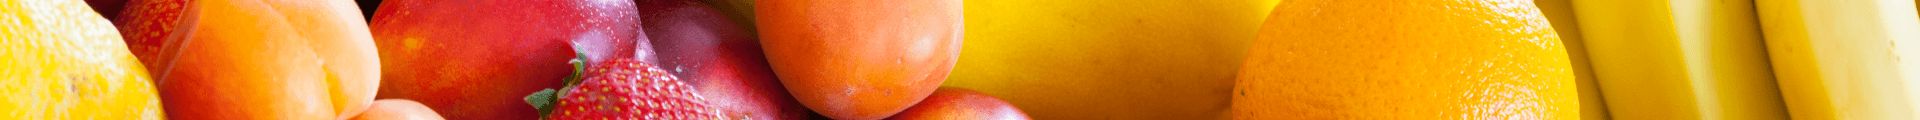 Dia do Tomate: curiosidades e dicas sobre o fruto